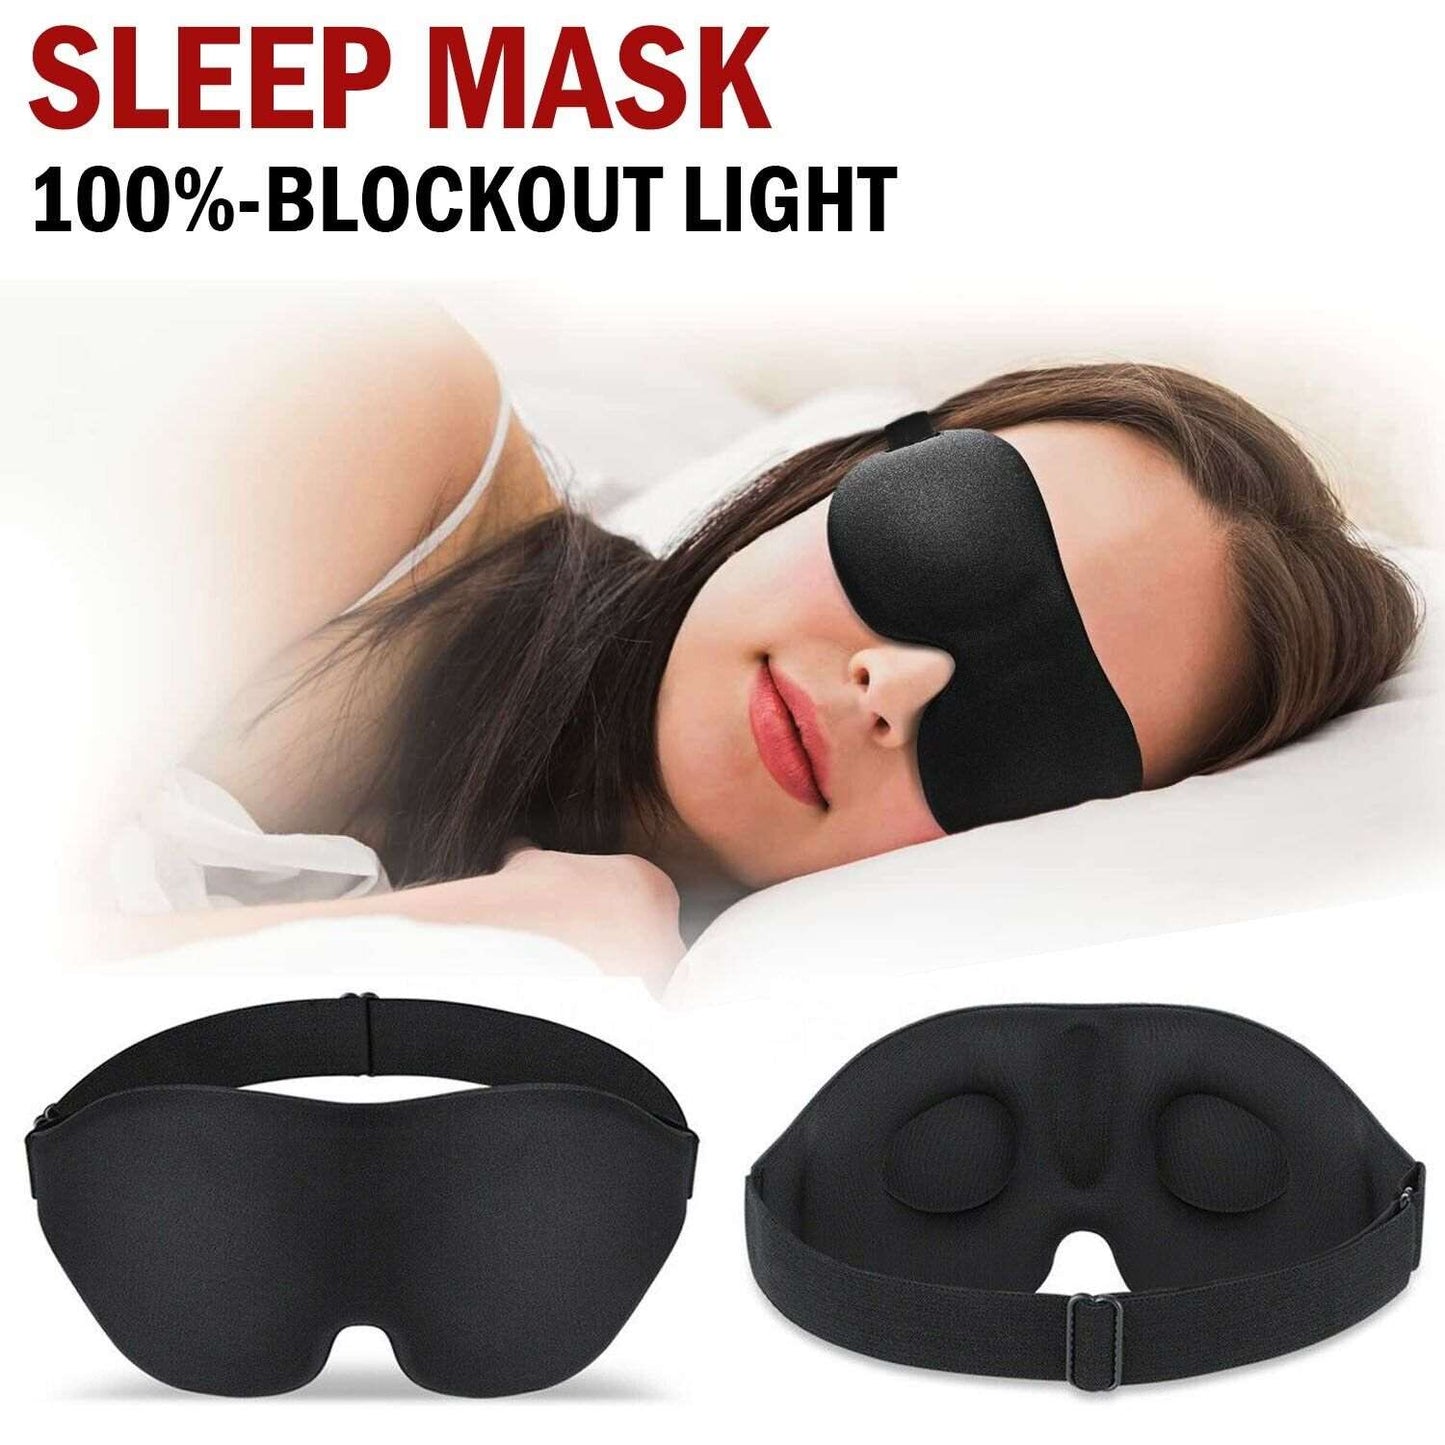 3D Sleep Mask for Men & Women